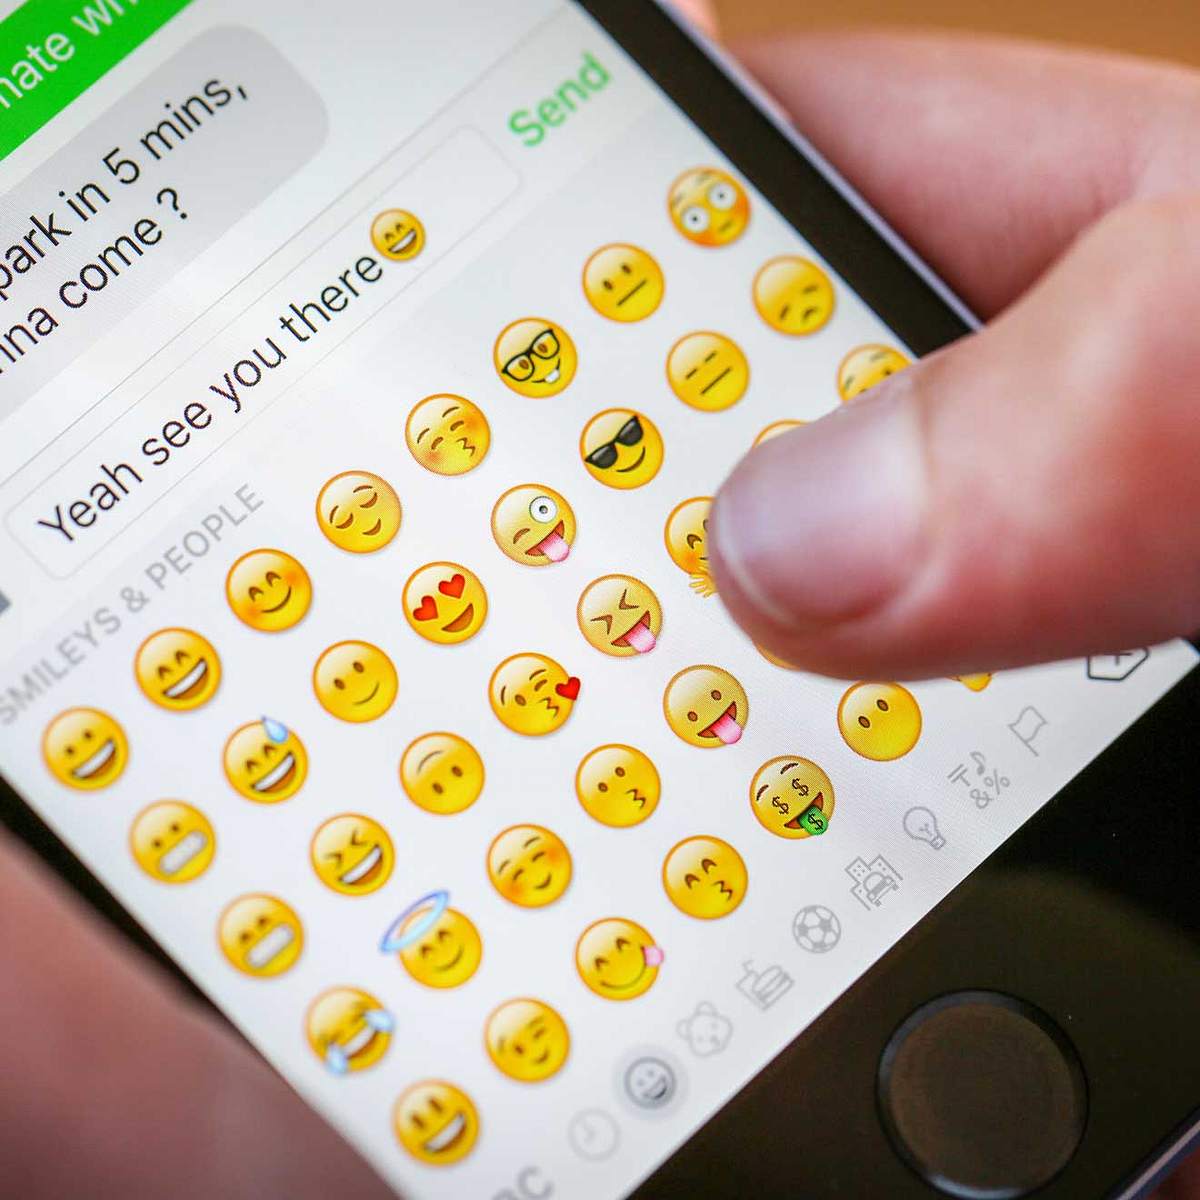 Welchen Emoji benutzt du am häufigsten und was sagt das über dich aus?